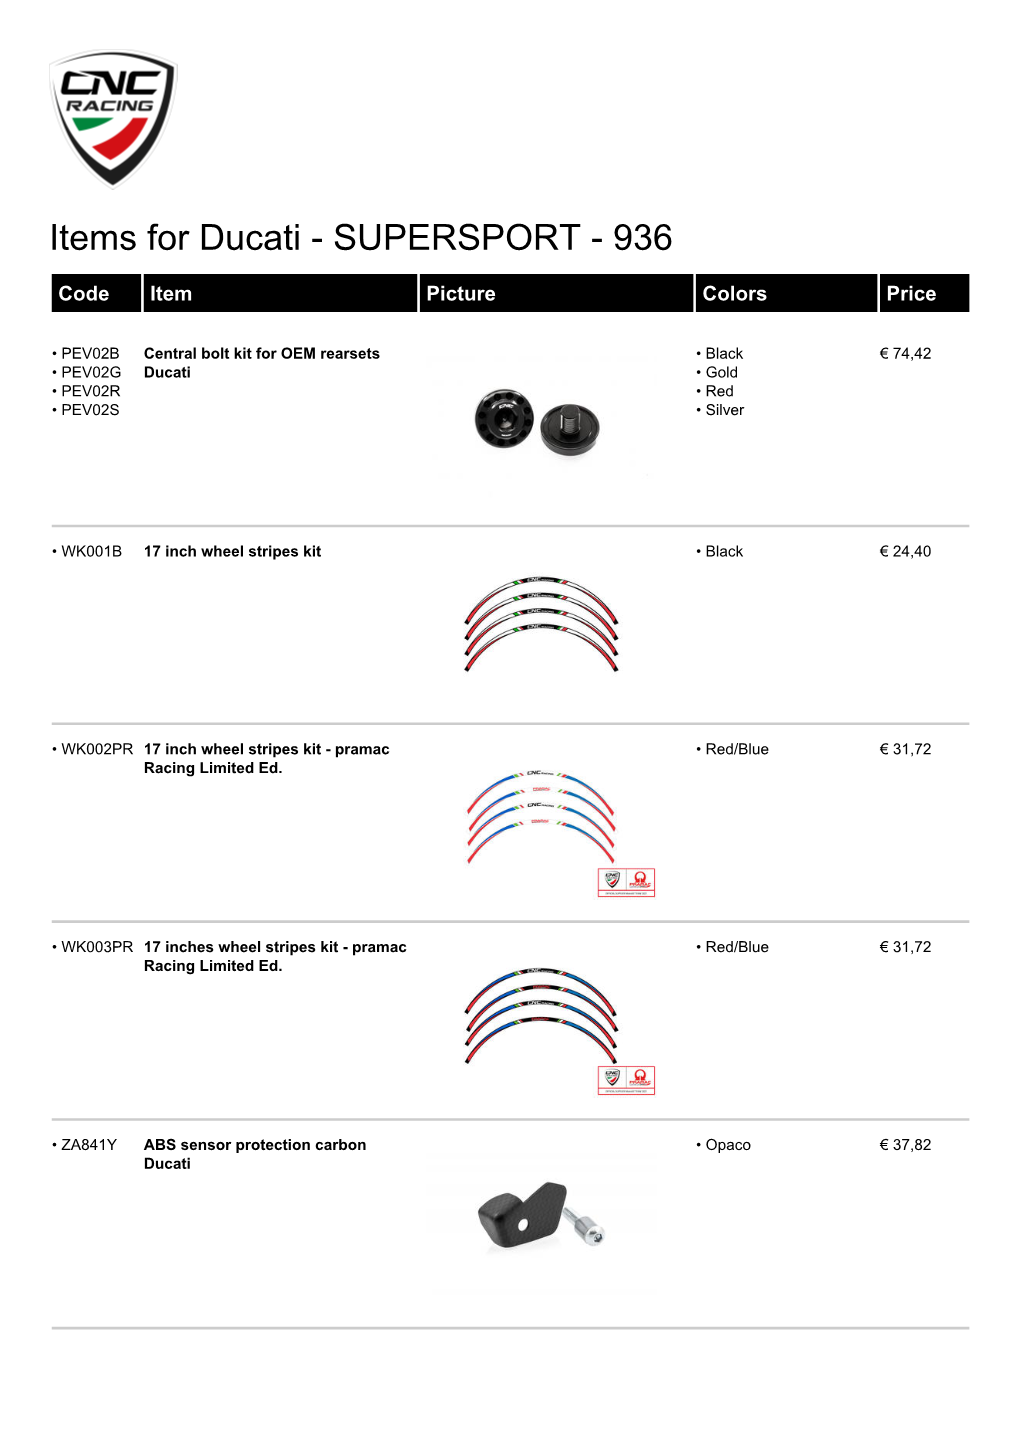 Supersport - 936